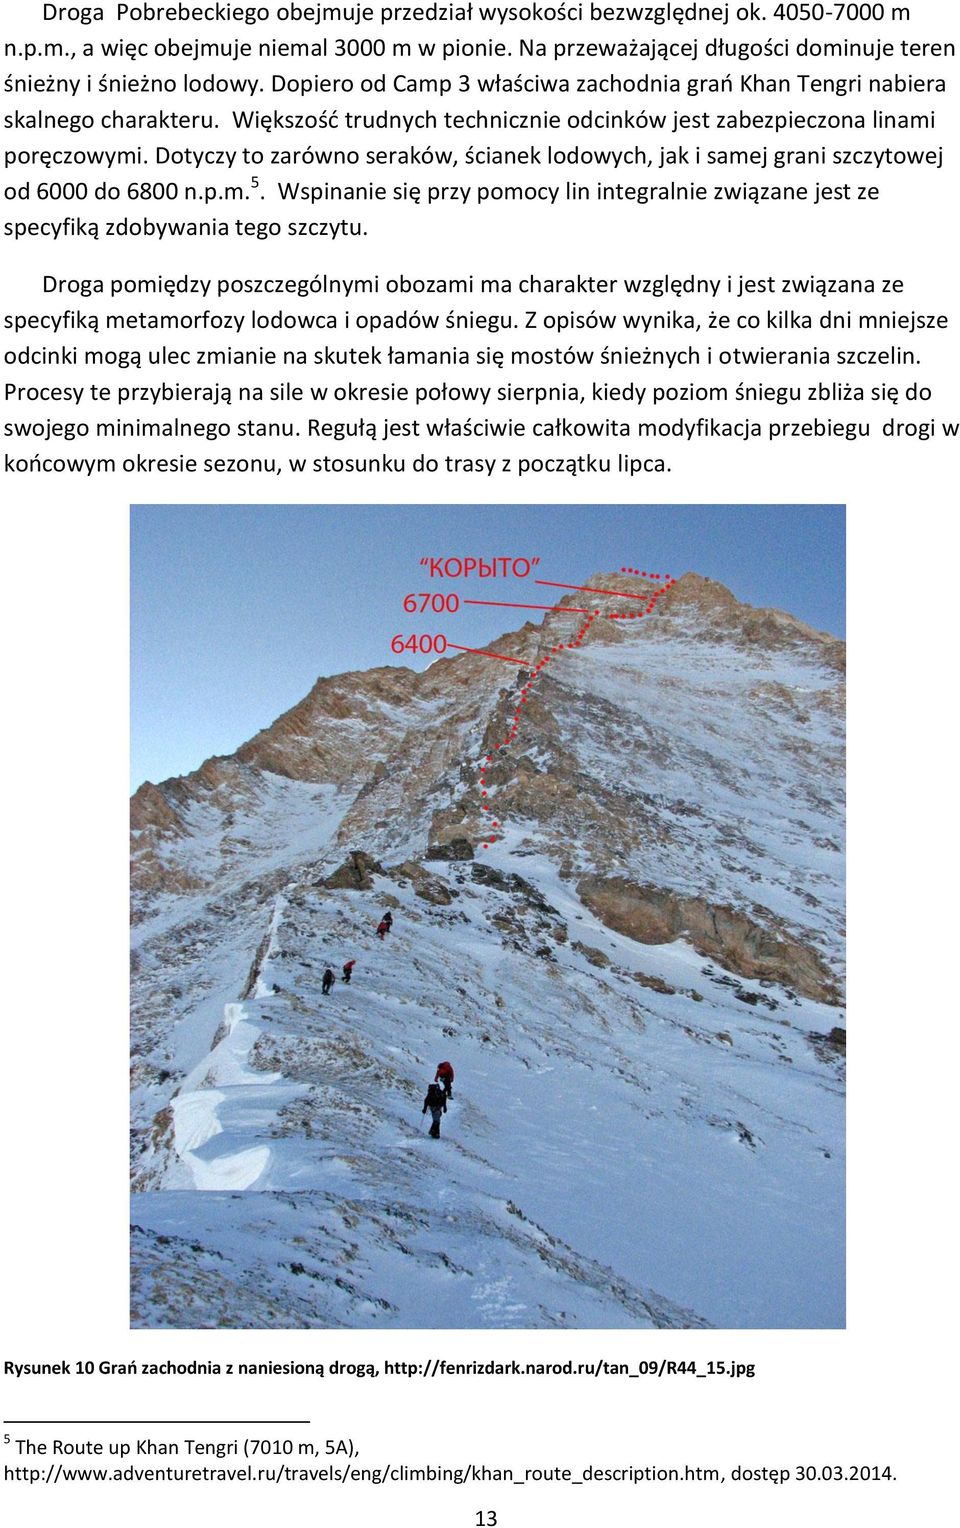 Dotyczy to zarówno seraków, ścianek lodowych, jak i samej grani szczytowej od 6000 do 6800 n.p.m. 5. Wspinanie się przy pomocy lin integralnie związane jest ze specyfiką zdobywania tego szczytu.